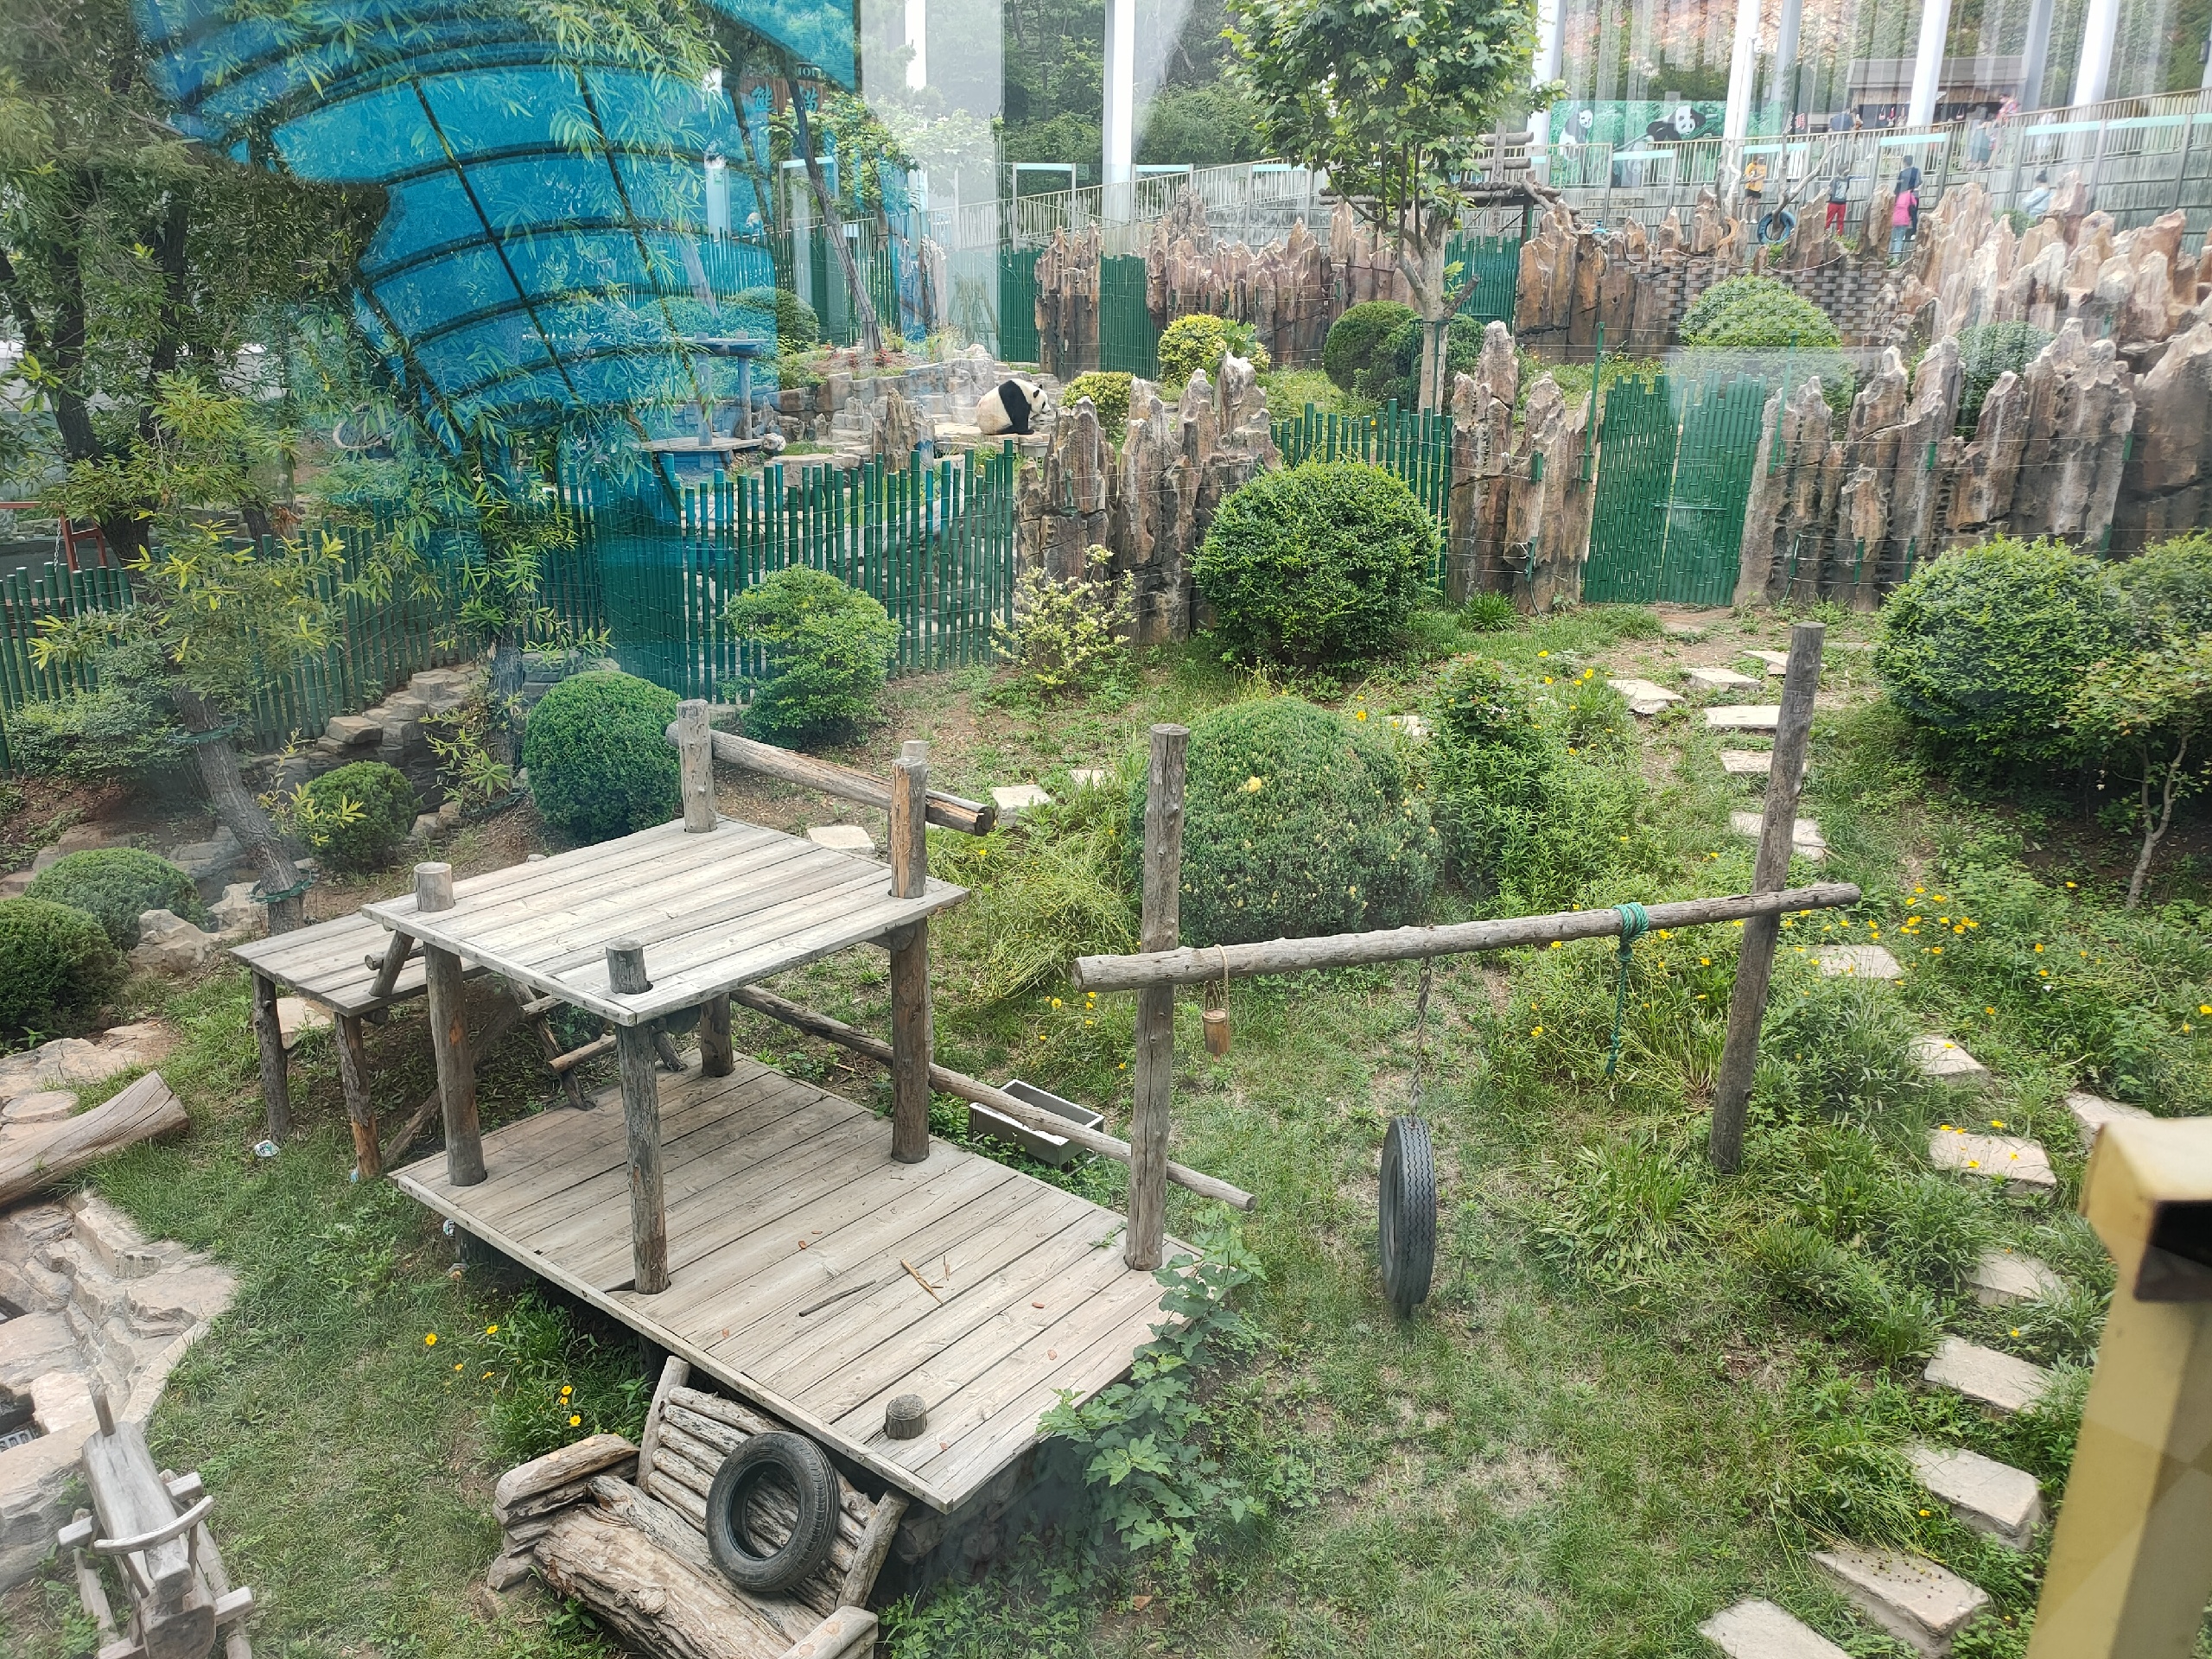 大连森林动物园里看国宝熊猫